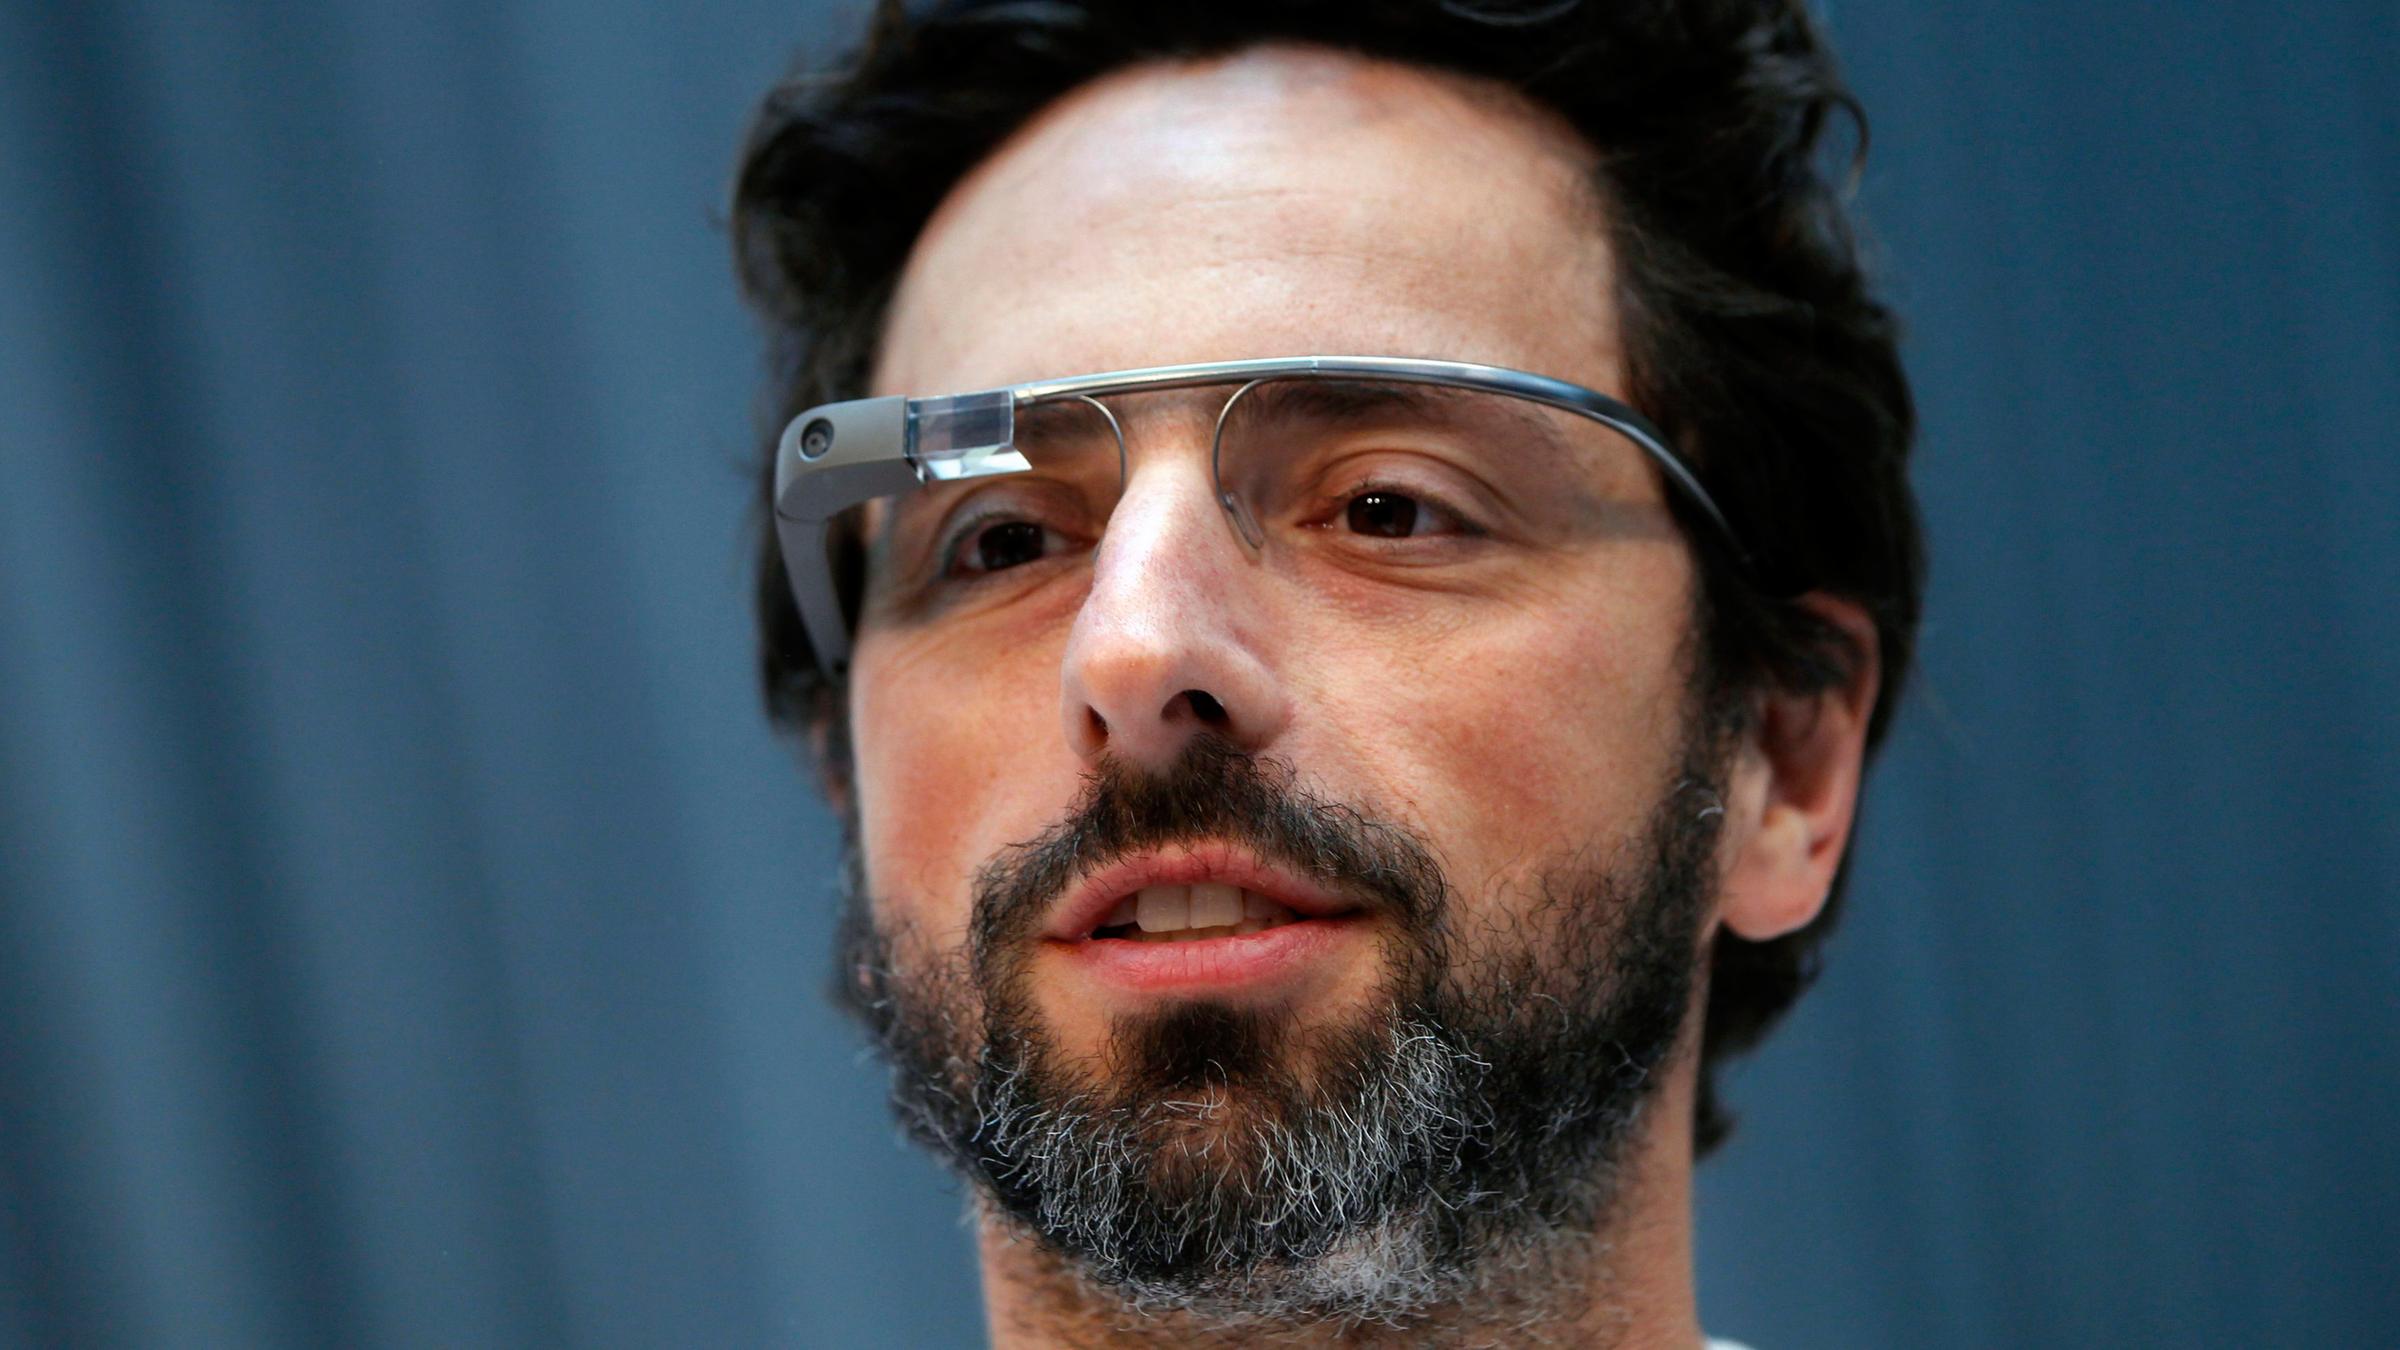 Archiv: Gründer Sergey Brin mit Goggle-Brille, aufgenommen am 20.02.2013 